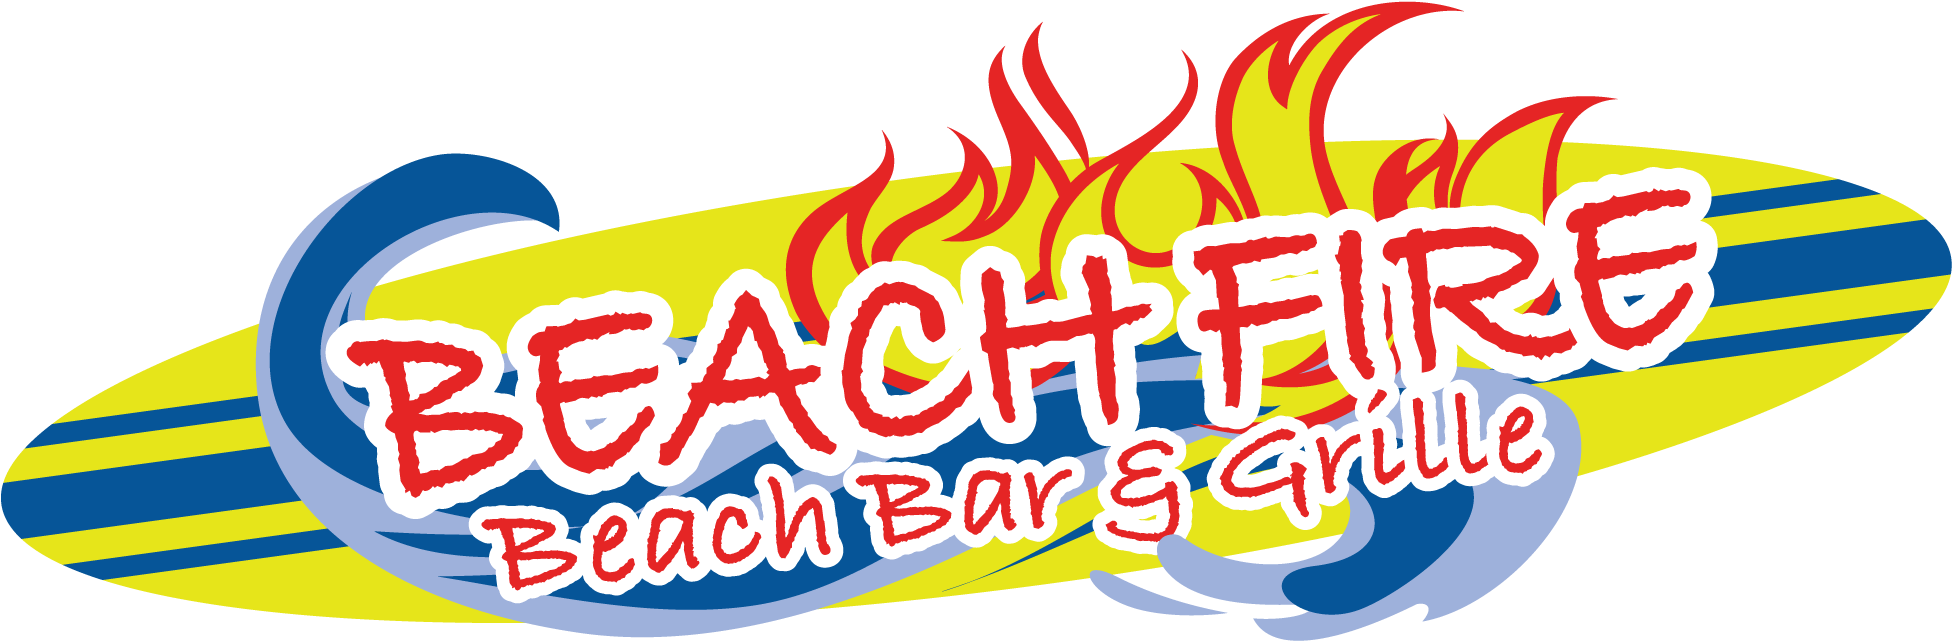 Beach Fire Beach Bar & Grille, Clearwater - Beach Fire Beach Bar And Grille (2018x713)